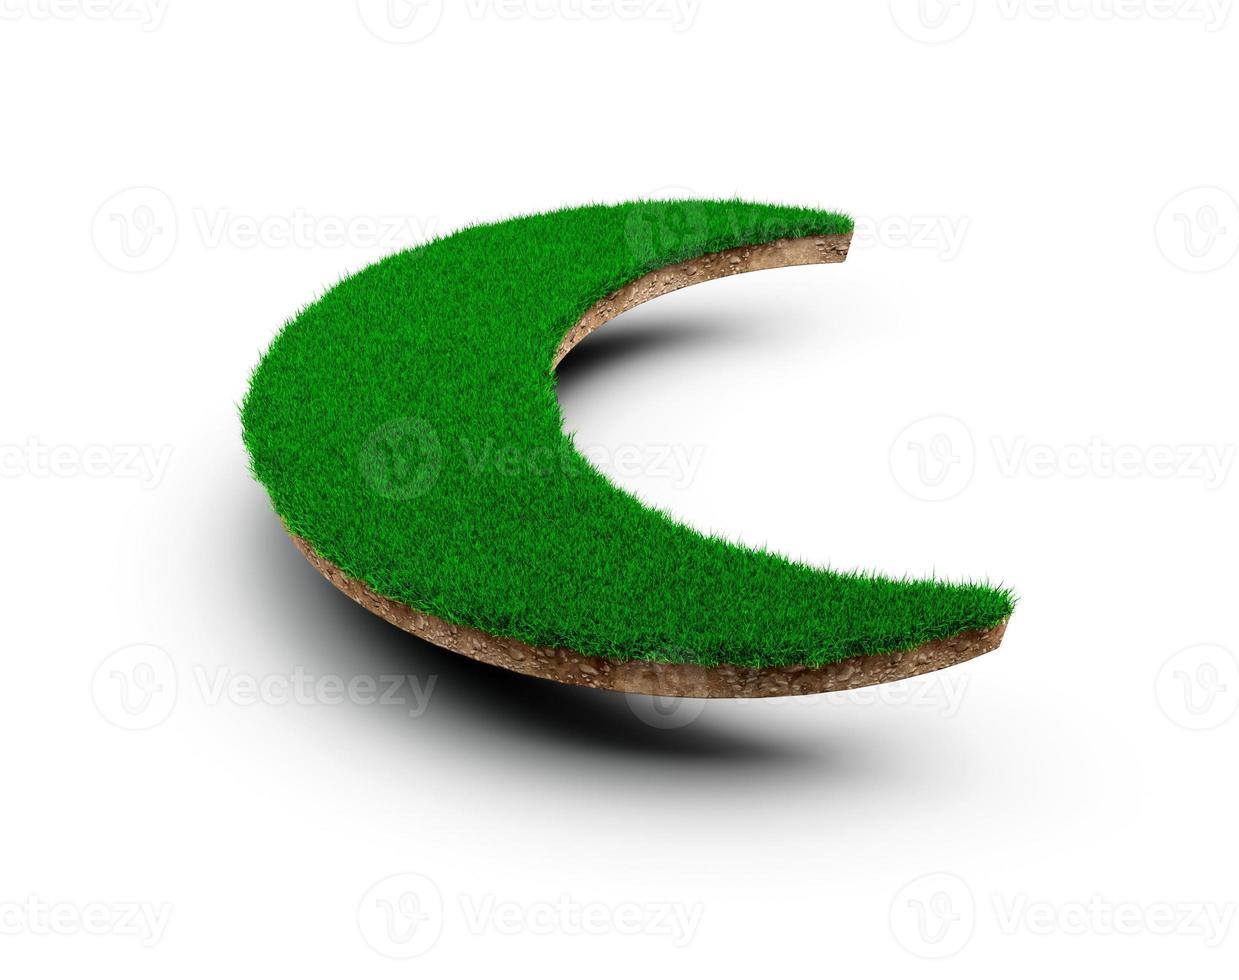 sección transversal de geología de la tierra del suelo en forma de luna creciente con hierba verde, corte de lodo de la tierra ilustración 3d aislada foto